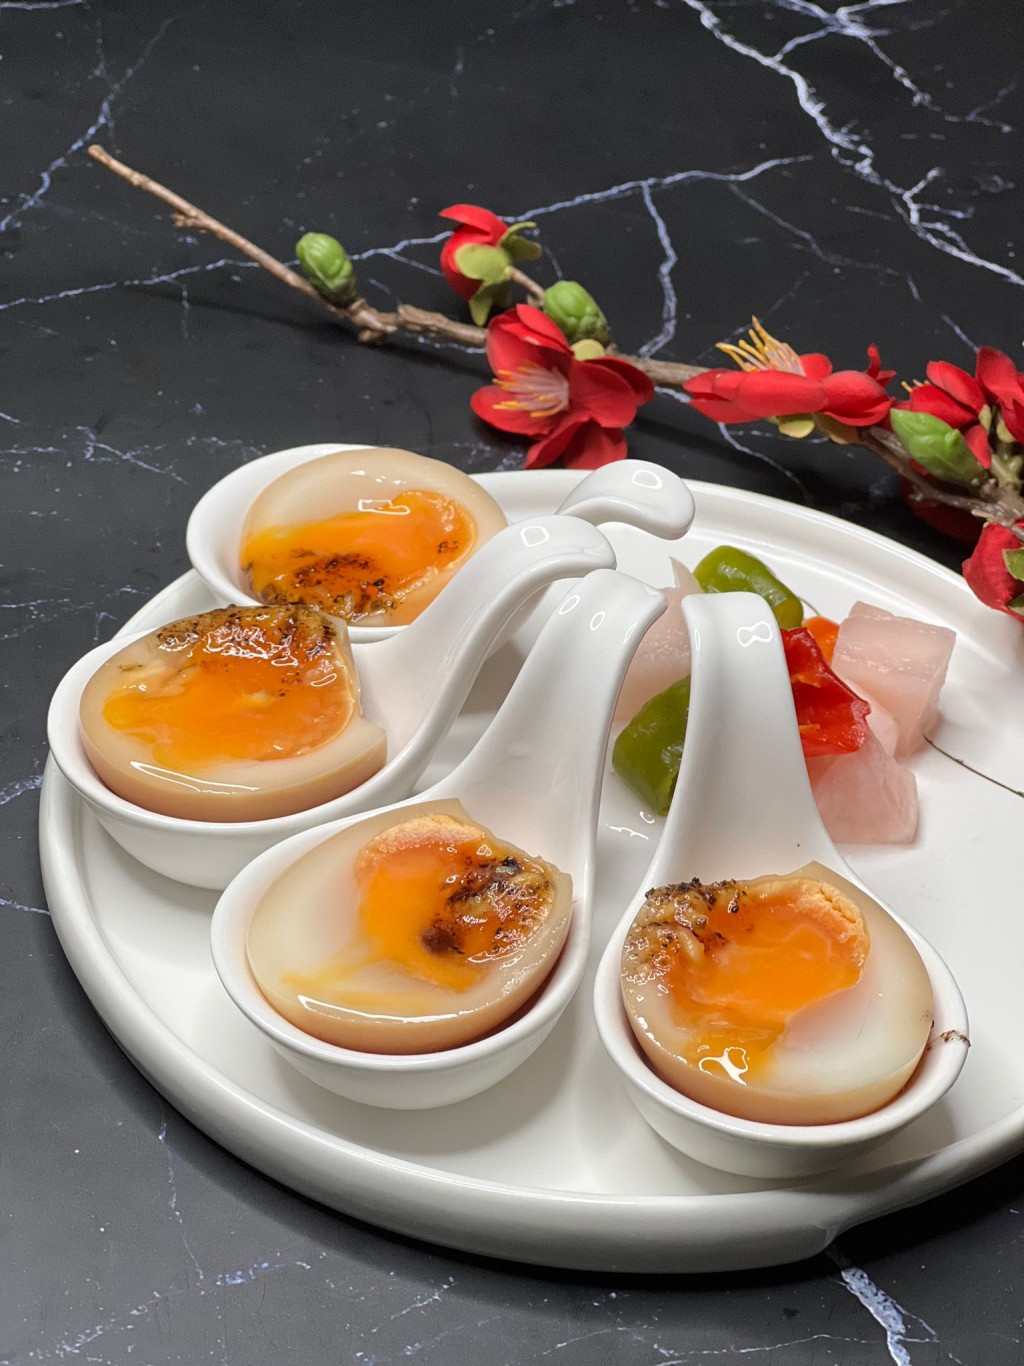 黑松露蜂蜜溏心蛋（价值 HK$38），优惠期间，可$1追加。